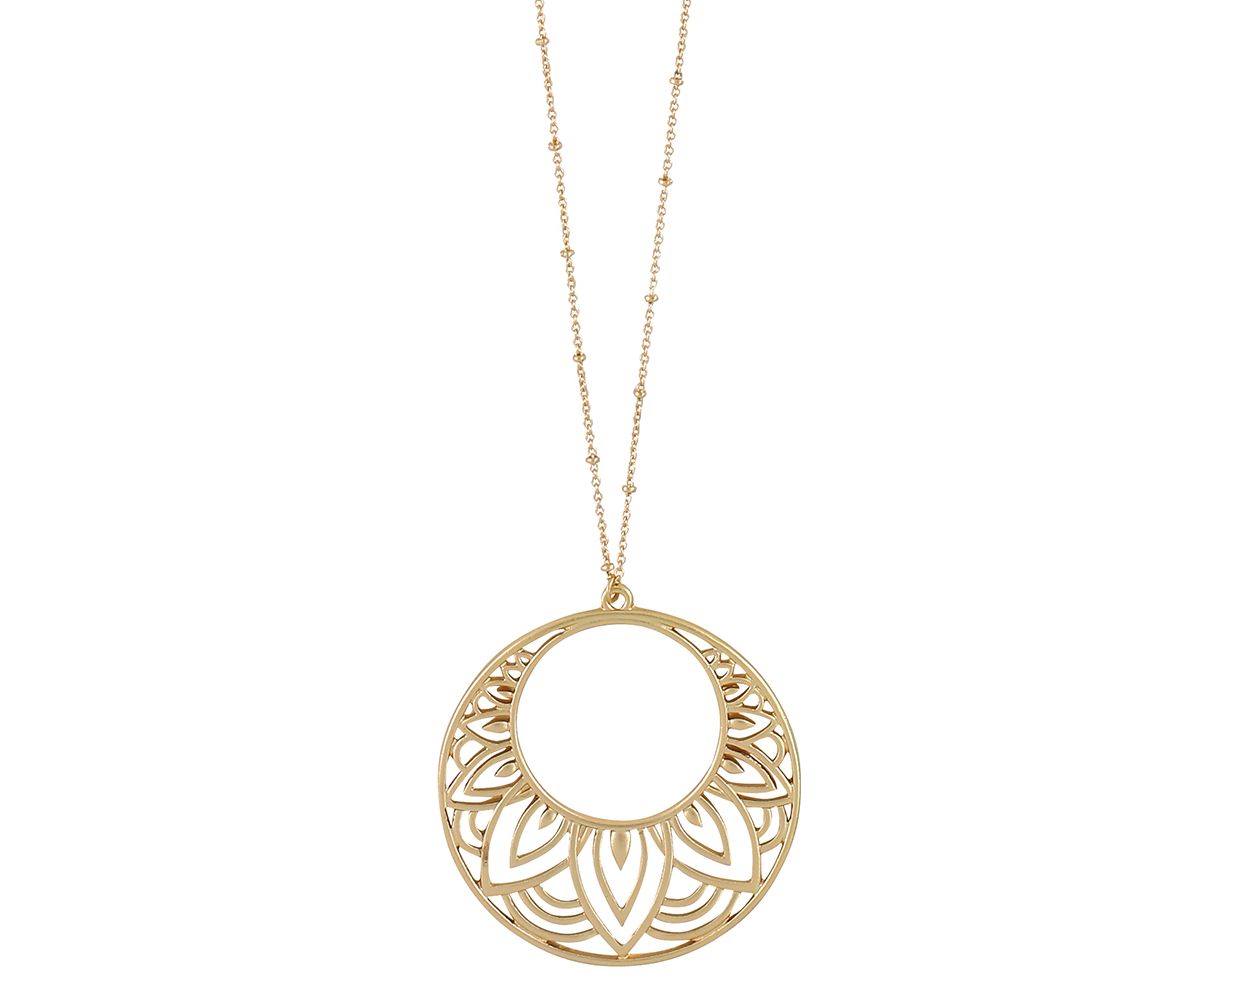 Periwinkle Matte Gold Pendant Necklace